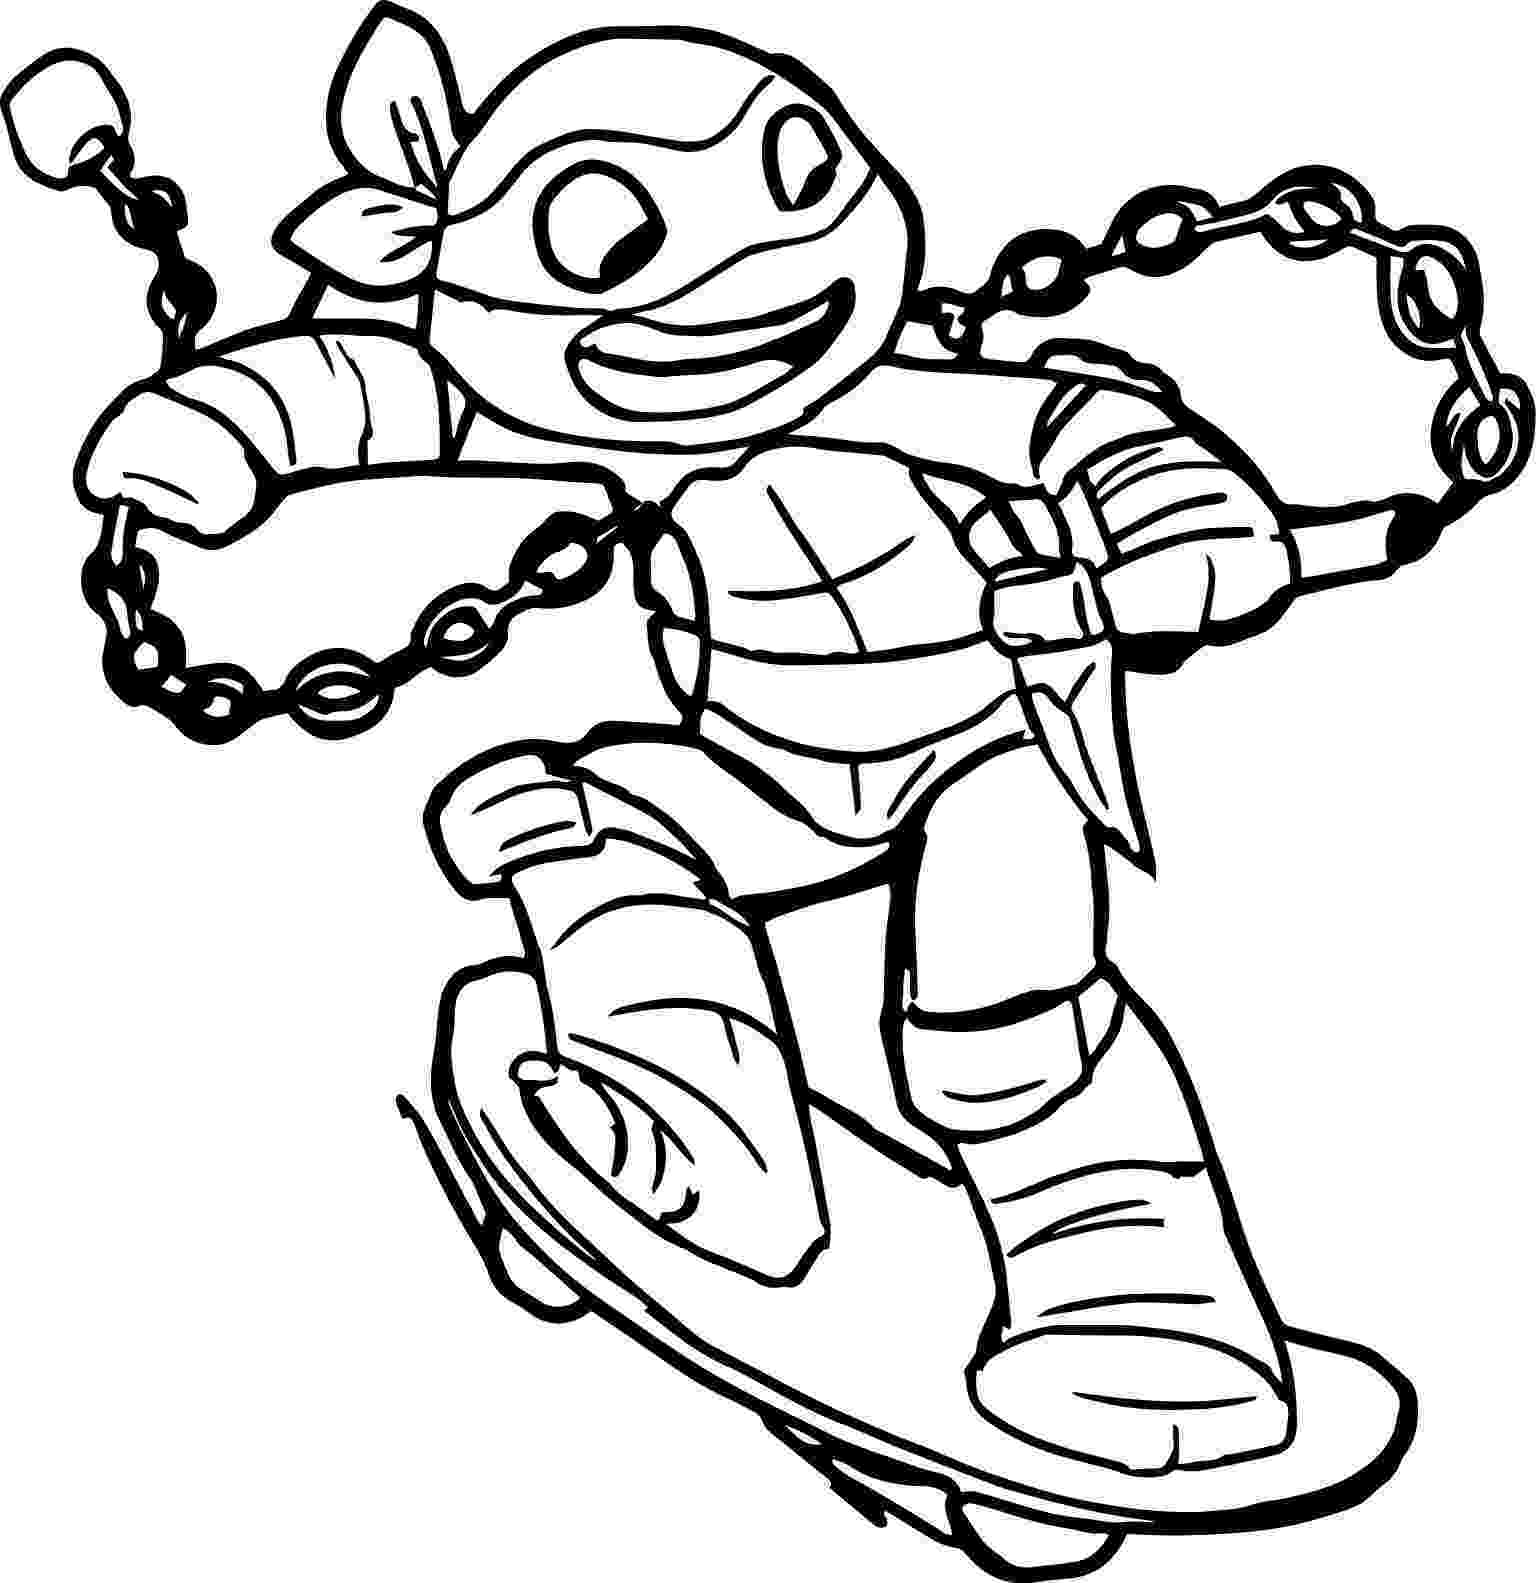 ninja turtle coloring sheets craftoholic teenage mutant ninja turtles coloring pages sheets coloring ninja turtle 